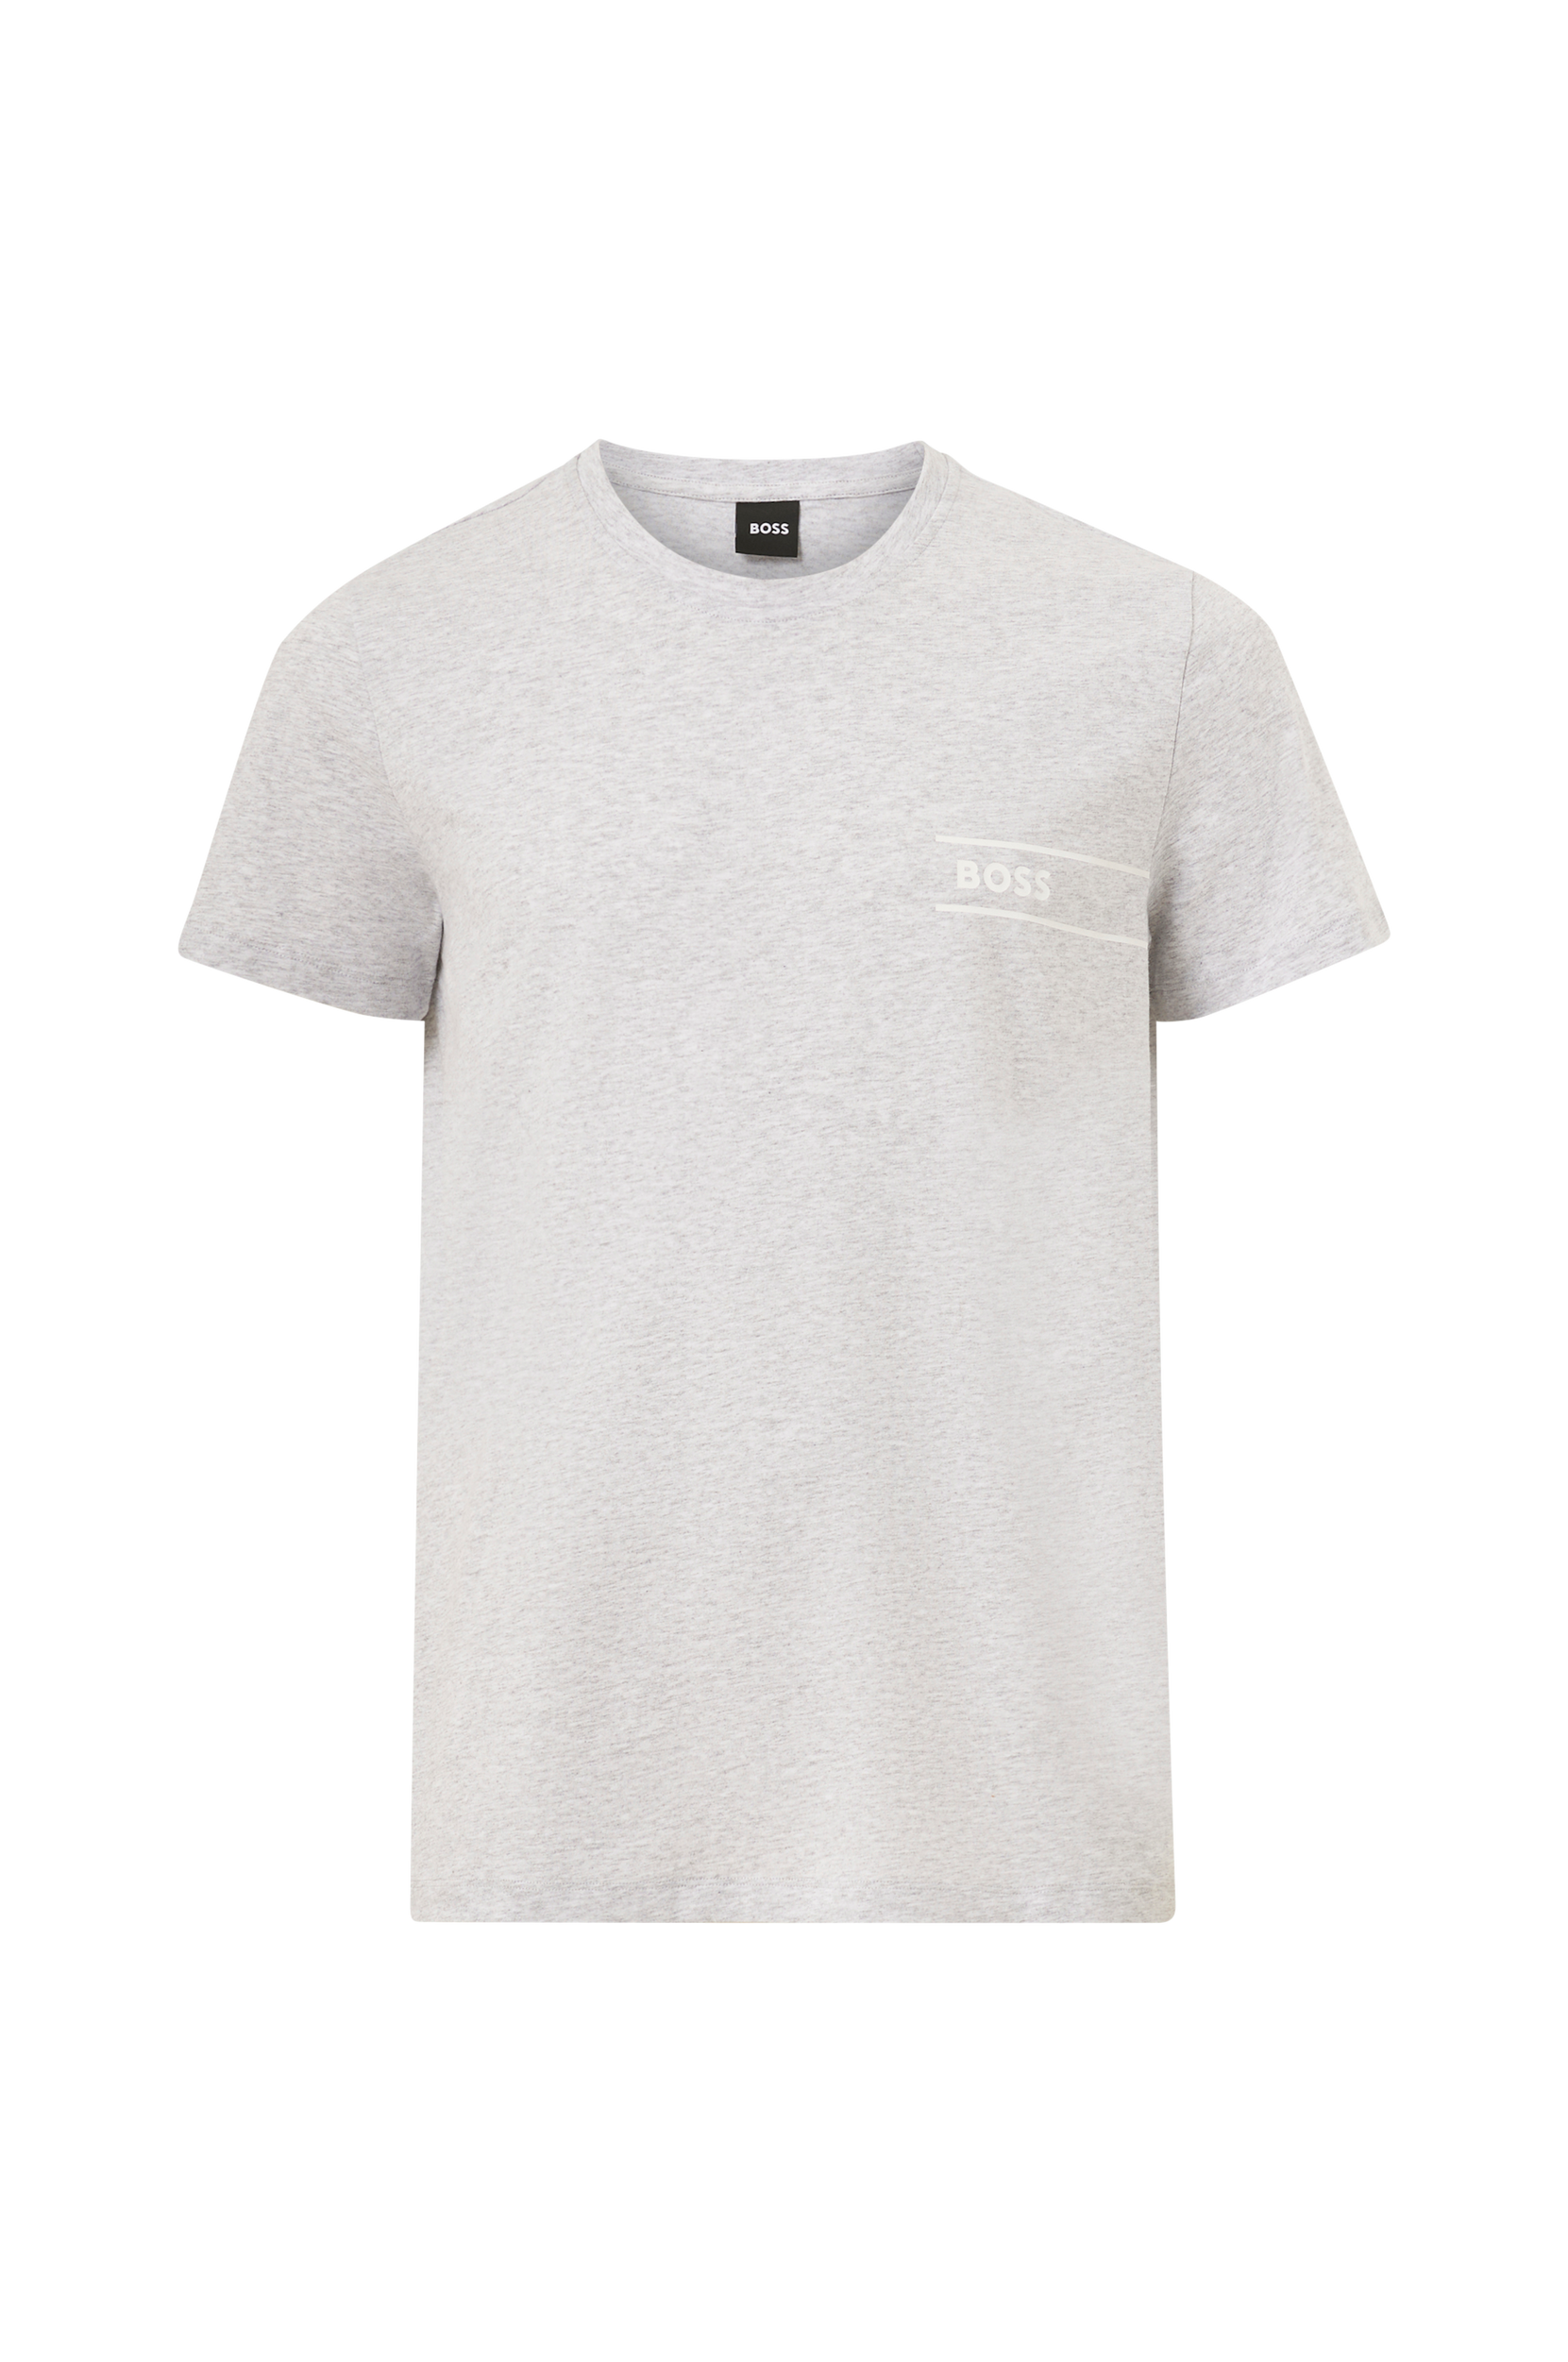 BOSS - T-shirt RN 24 - Sølvfarvet - XL